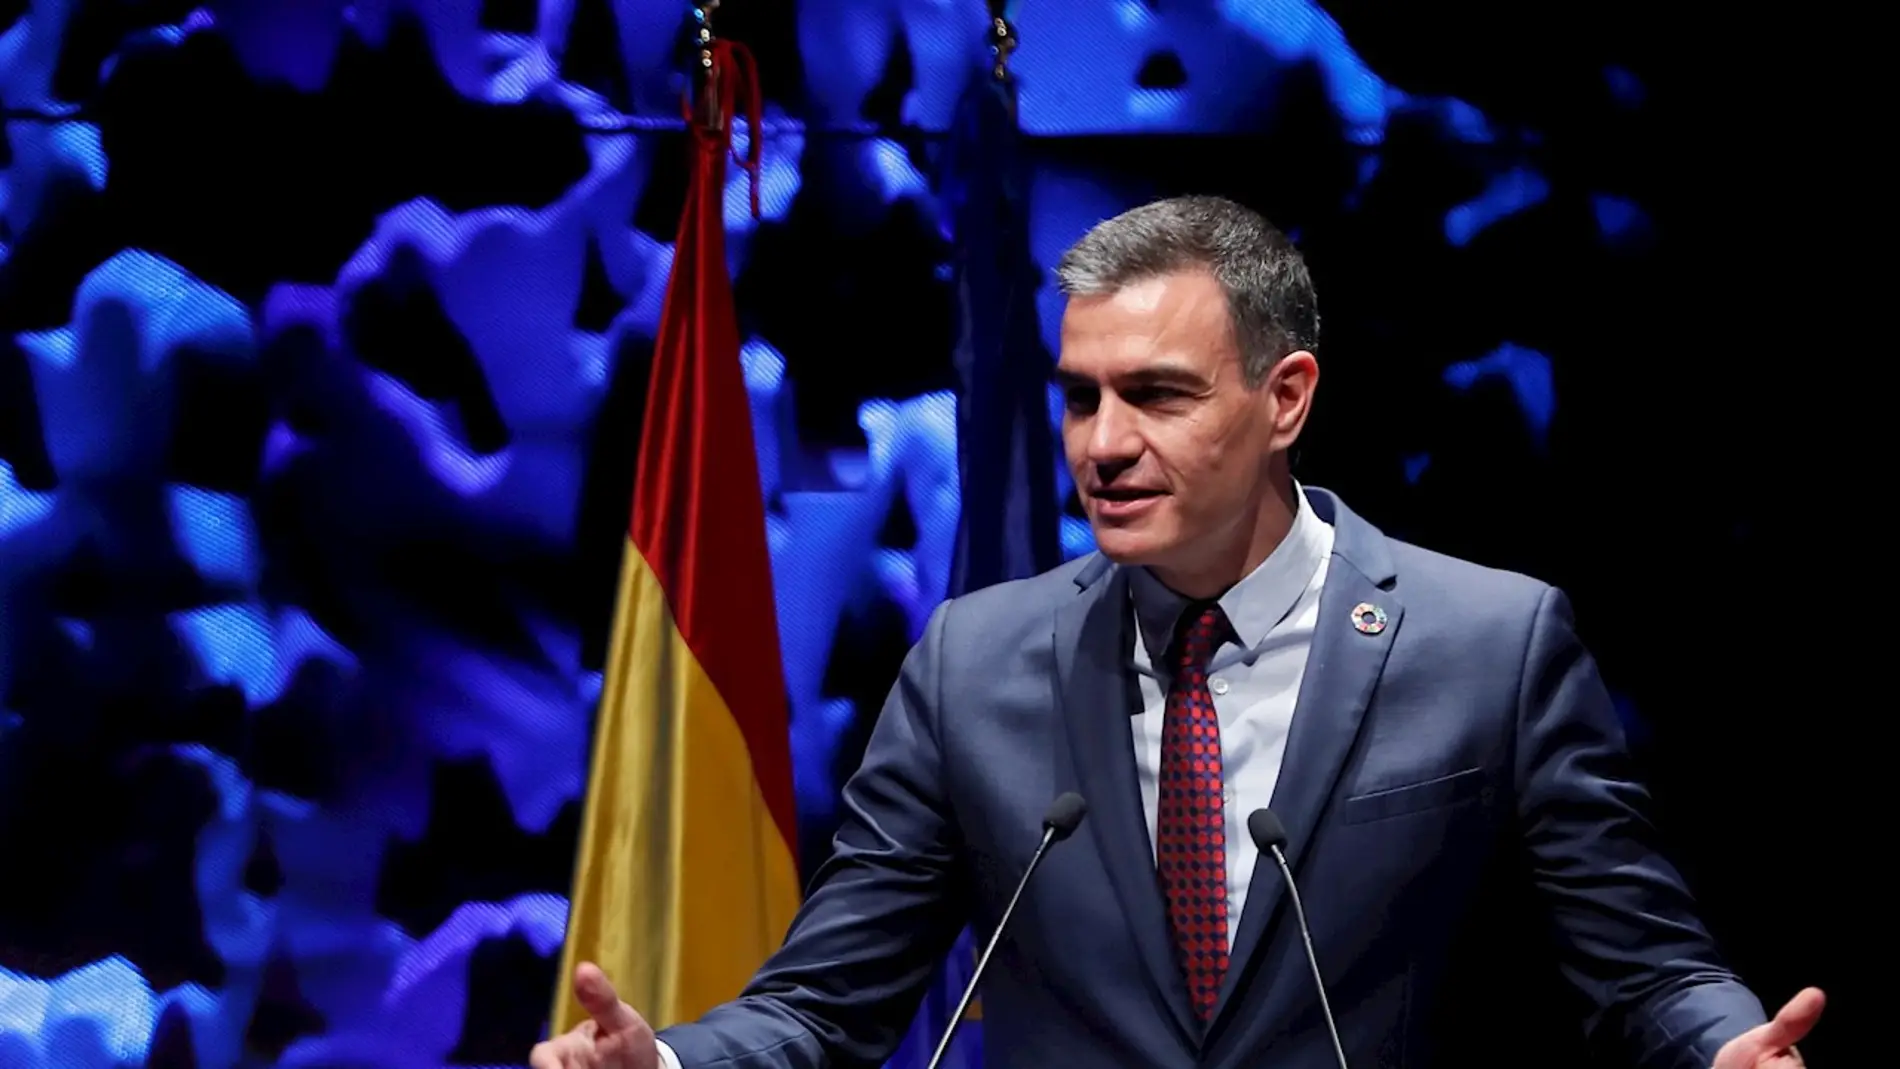 El presidente del Gobierno, Pedro Sánchez, pronuncia un discurso durante la inauguración del IV Congreso Iberoamericano CEAPI